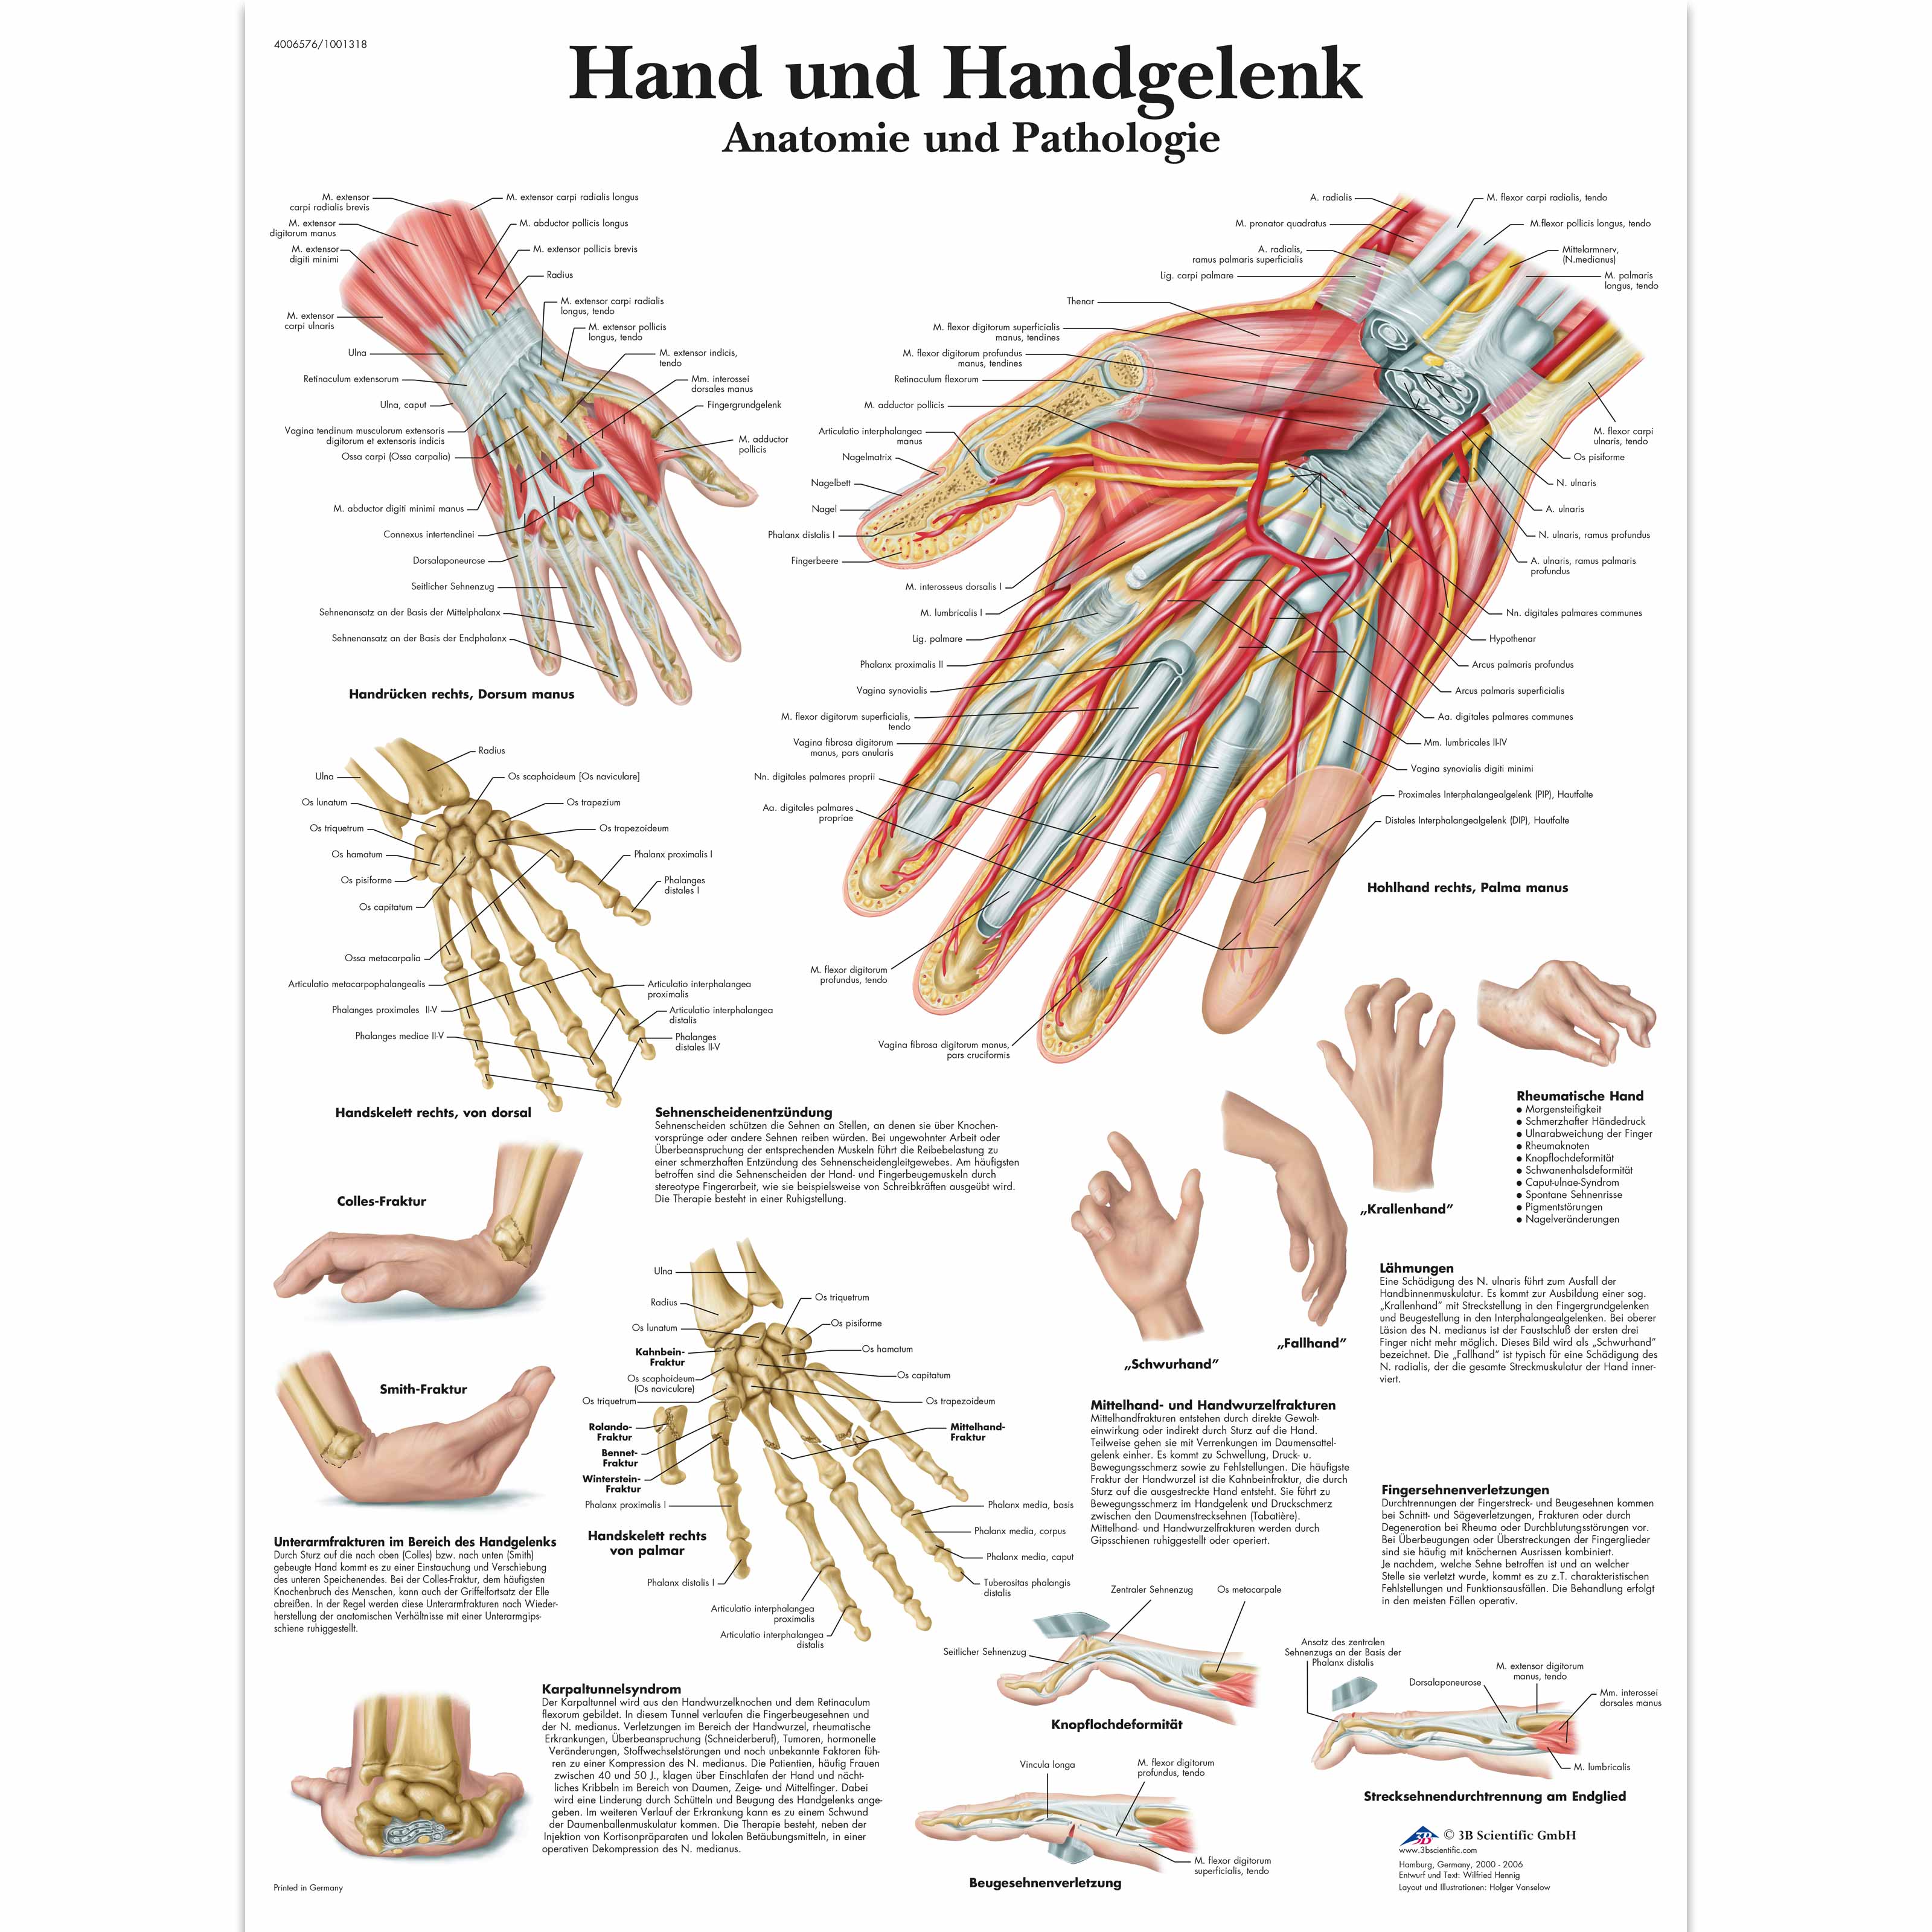 Hand Und Handgelenk Anatomie Und Pathologie Vr0171uu Skeletal System 3b Scientific